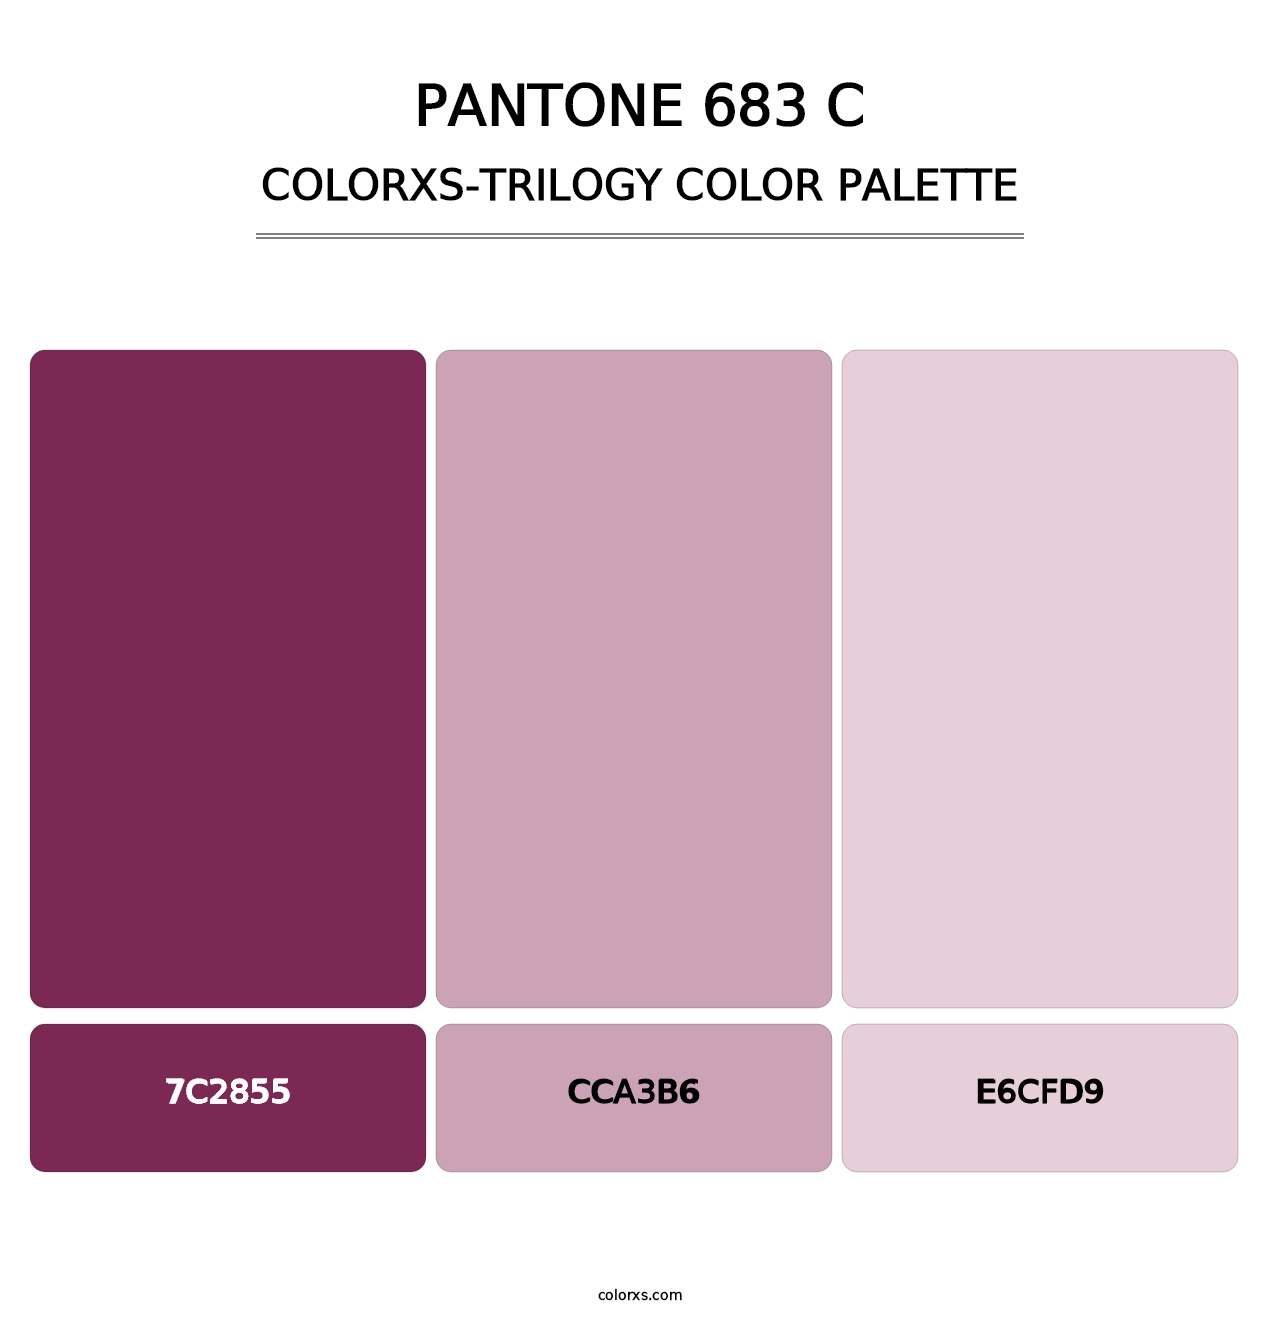 PANTONE 683 C - Colorxs Trilogy Palette